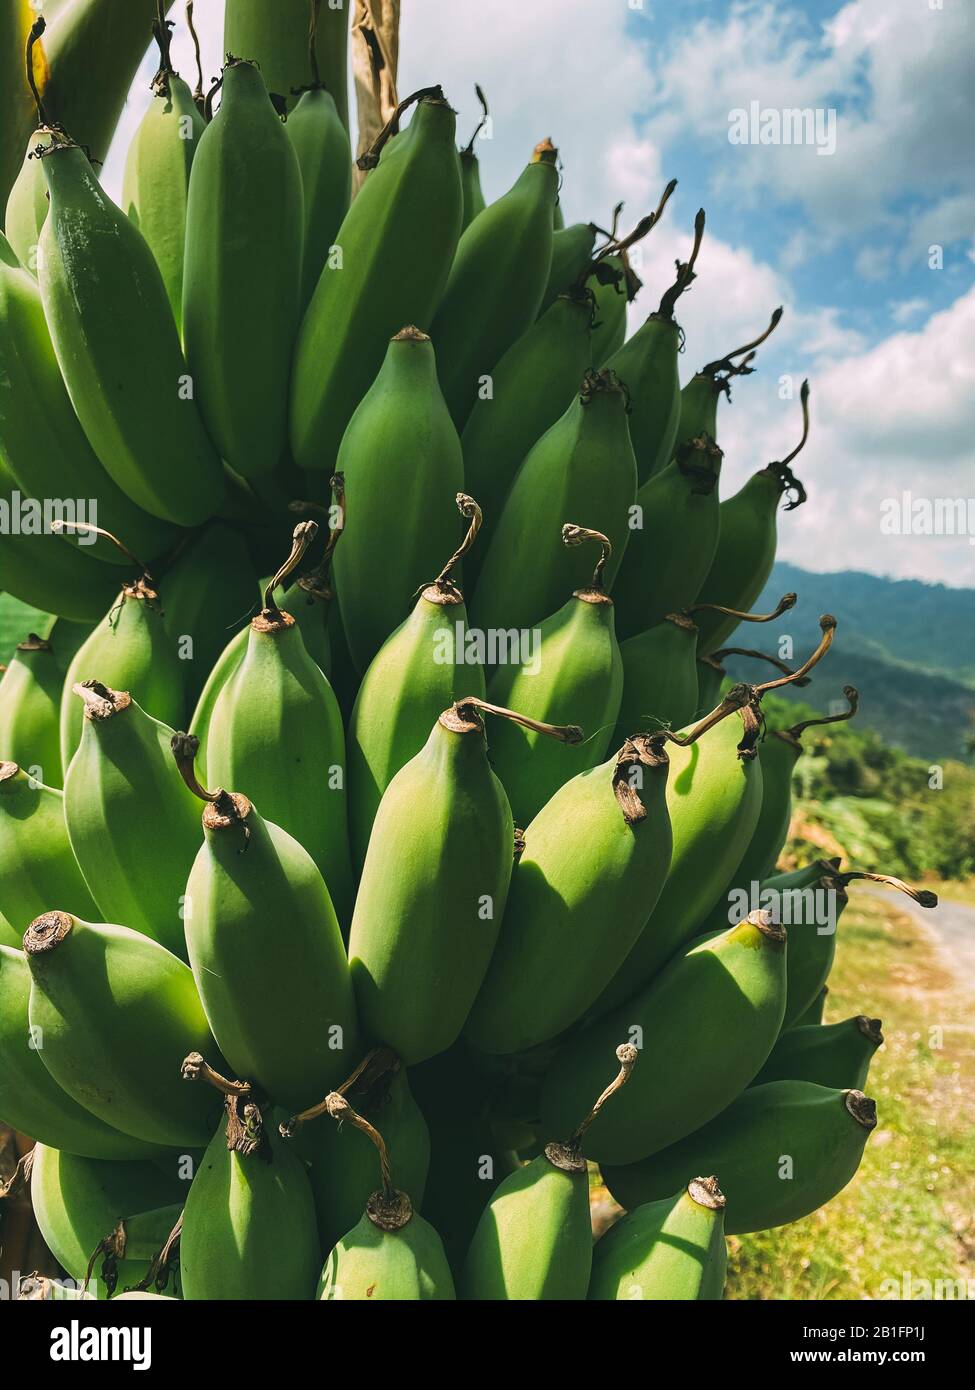 Banana branca con un mazzo di banane verdi che crescono negli altopiani della giungla Foto Stock